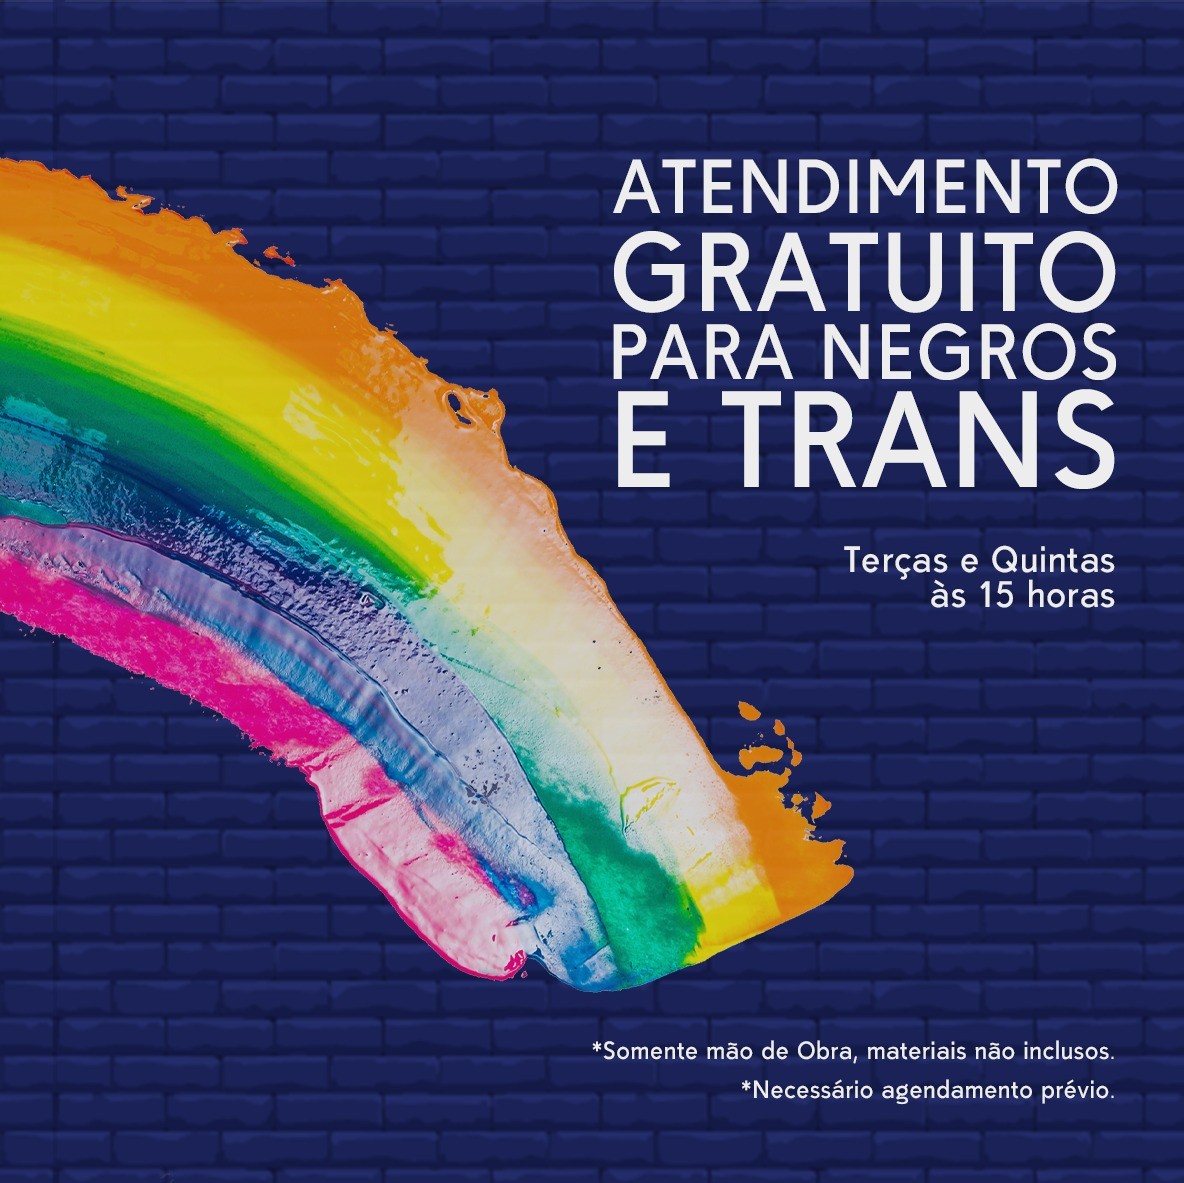 A empresa ainda oferece consultoria gratuita para pessoas pretas e trans em situação de vulnerabilidade (Foto: Divulgação / Bicha de Aluguel)